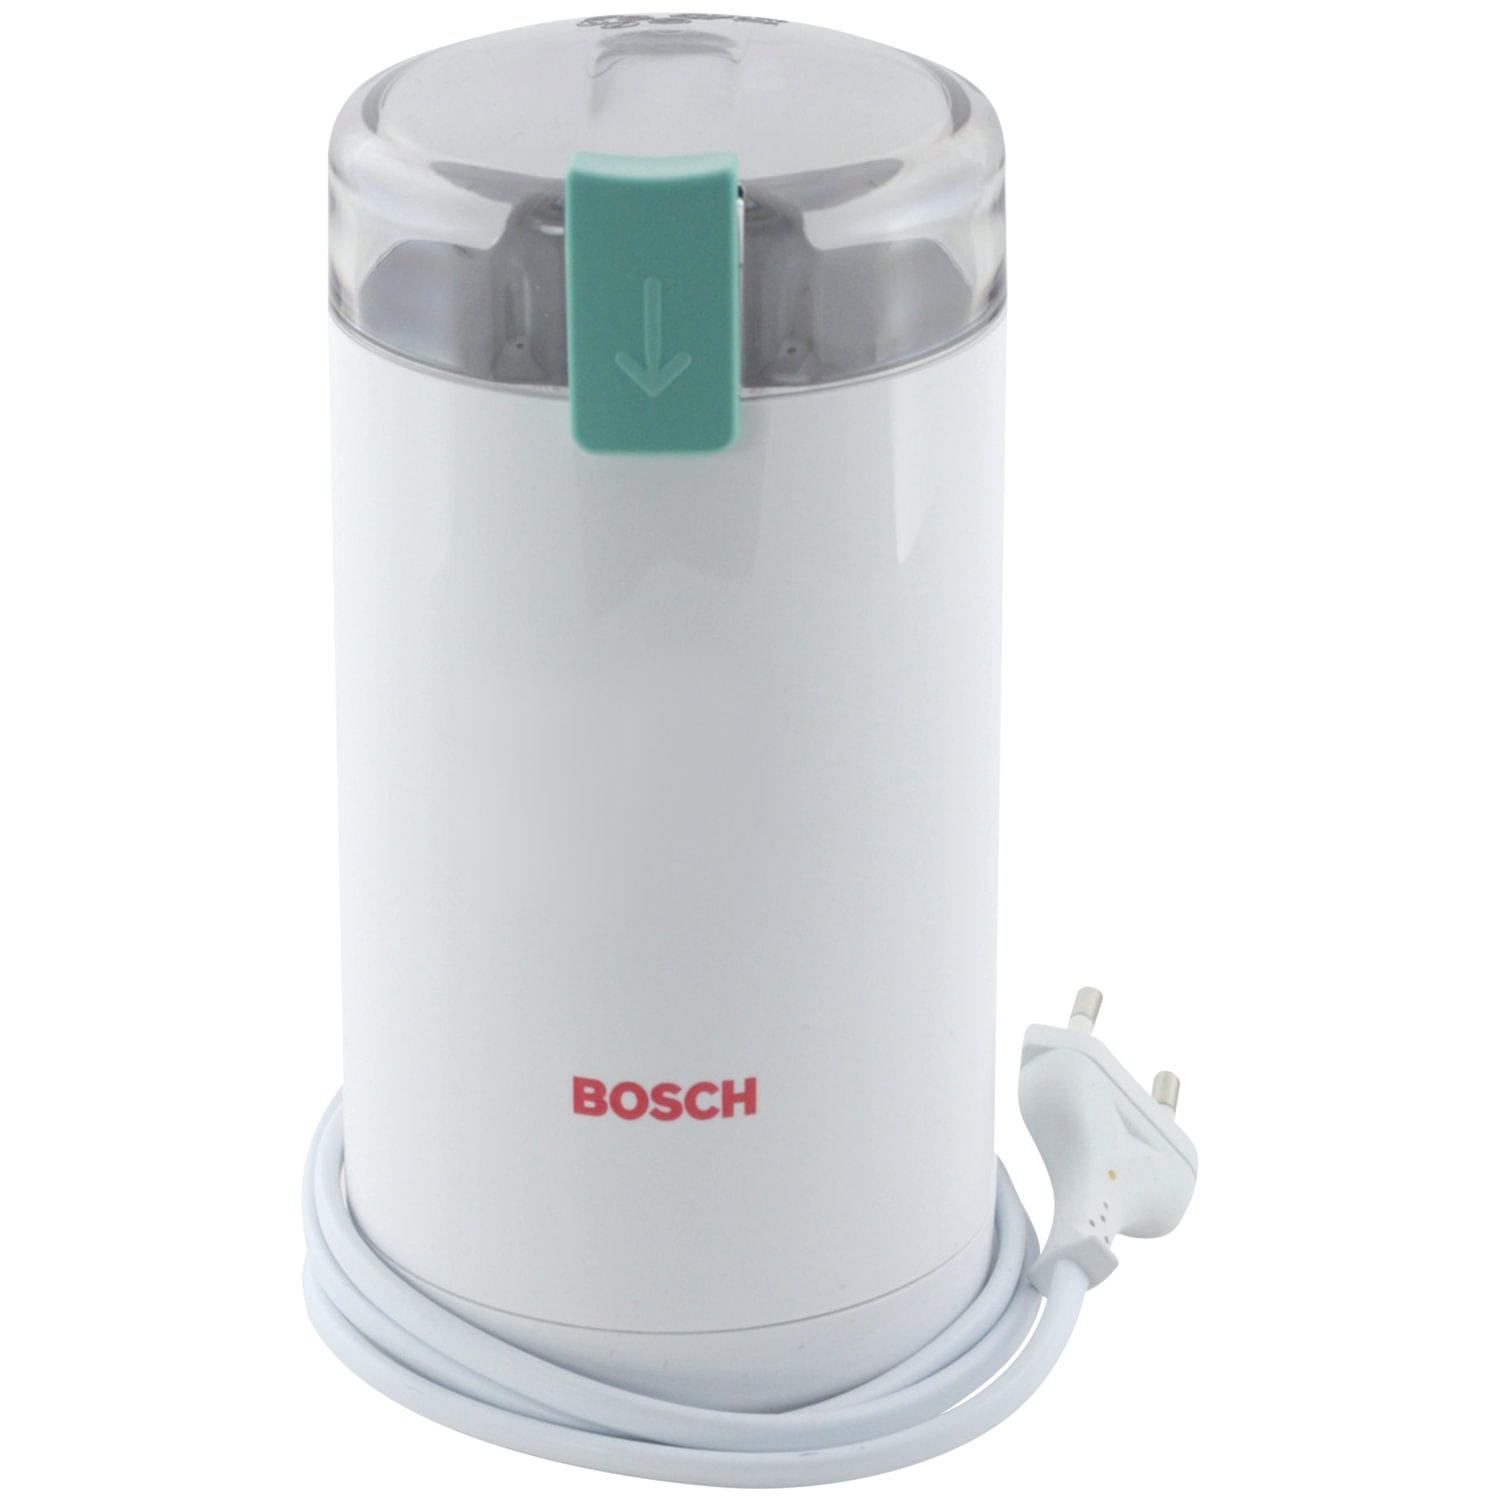  Bosch MKM6000